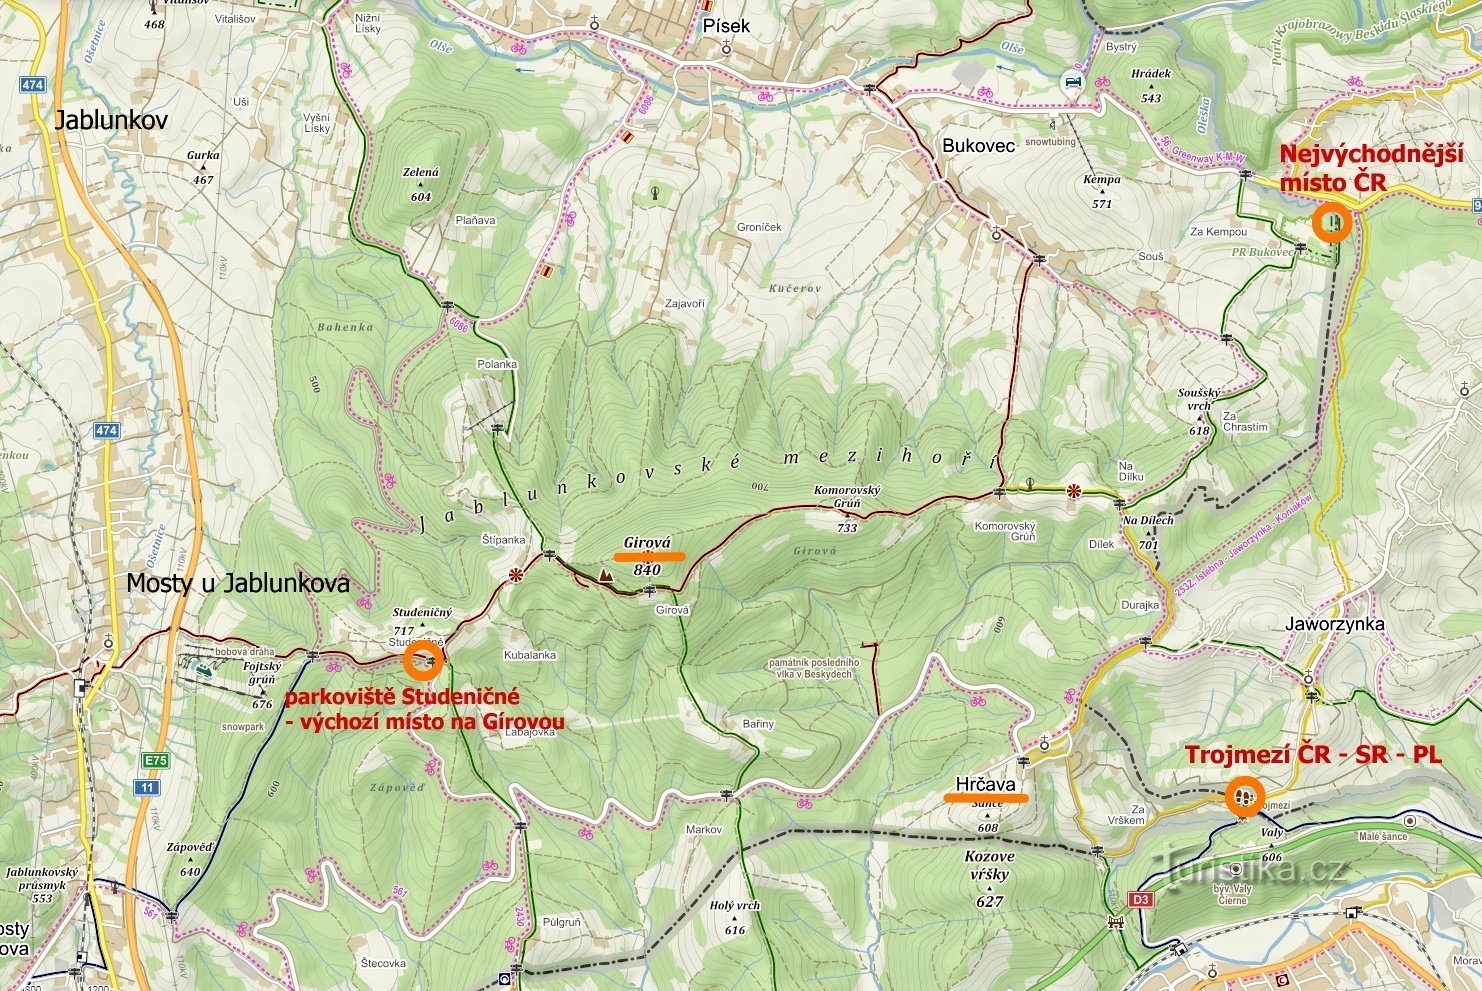 harta locurilor vizitate: punctul cel mai de est al Republicii Cehe, Hrčava - Trojmezí, Jablunkovsé m